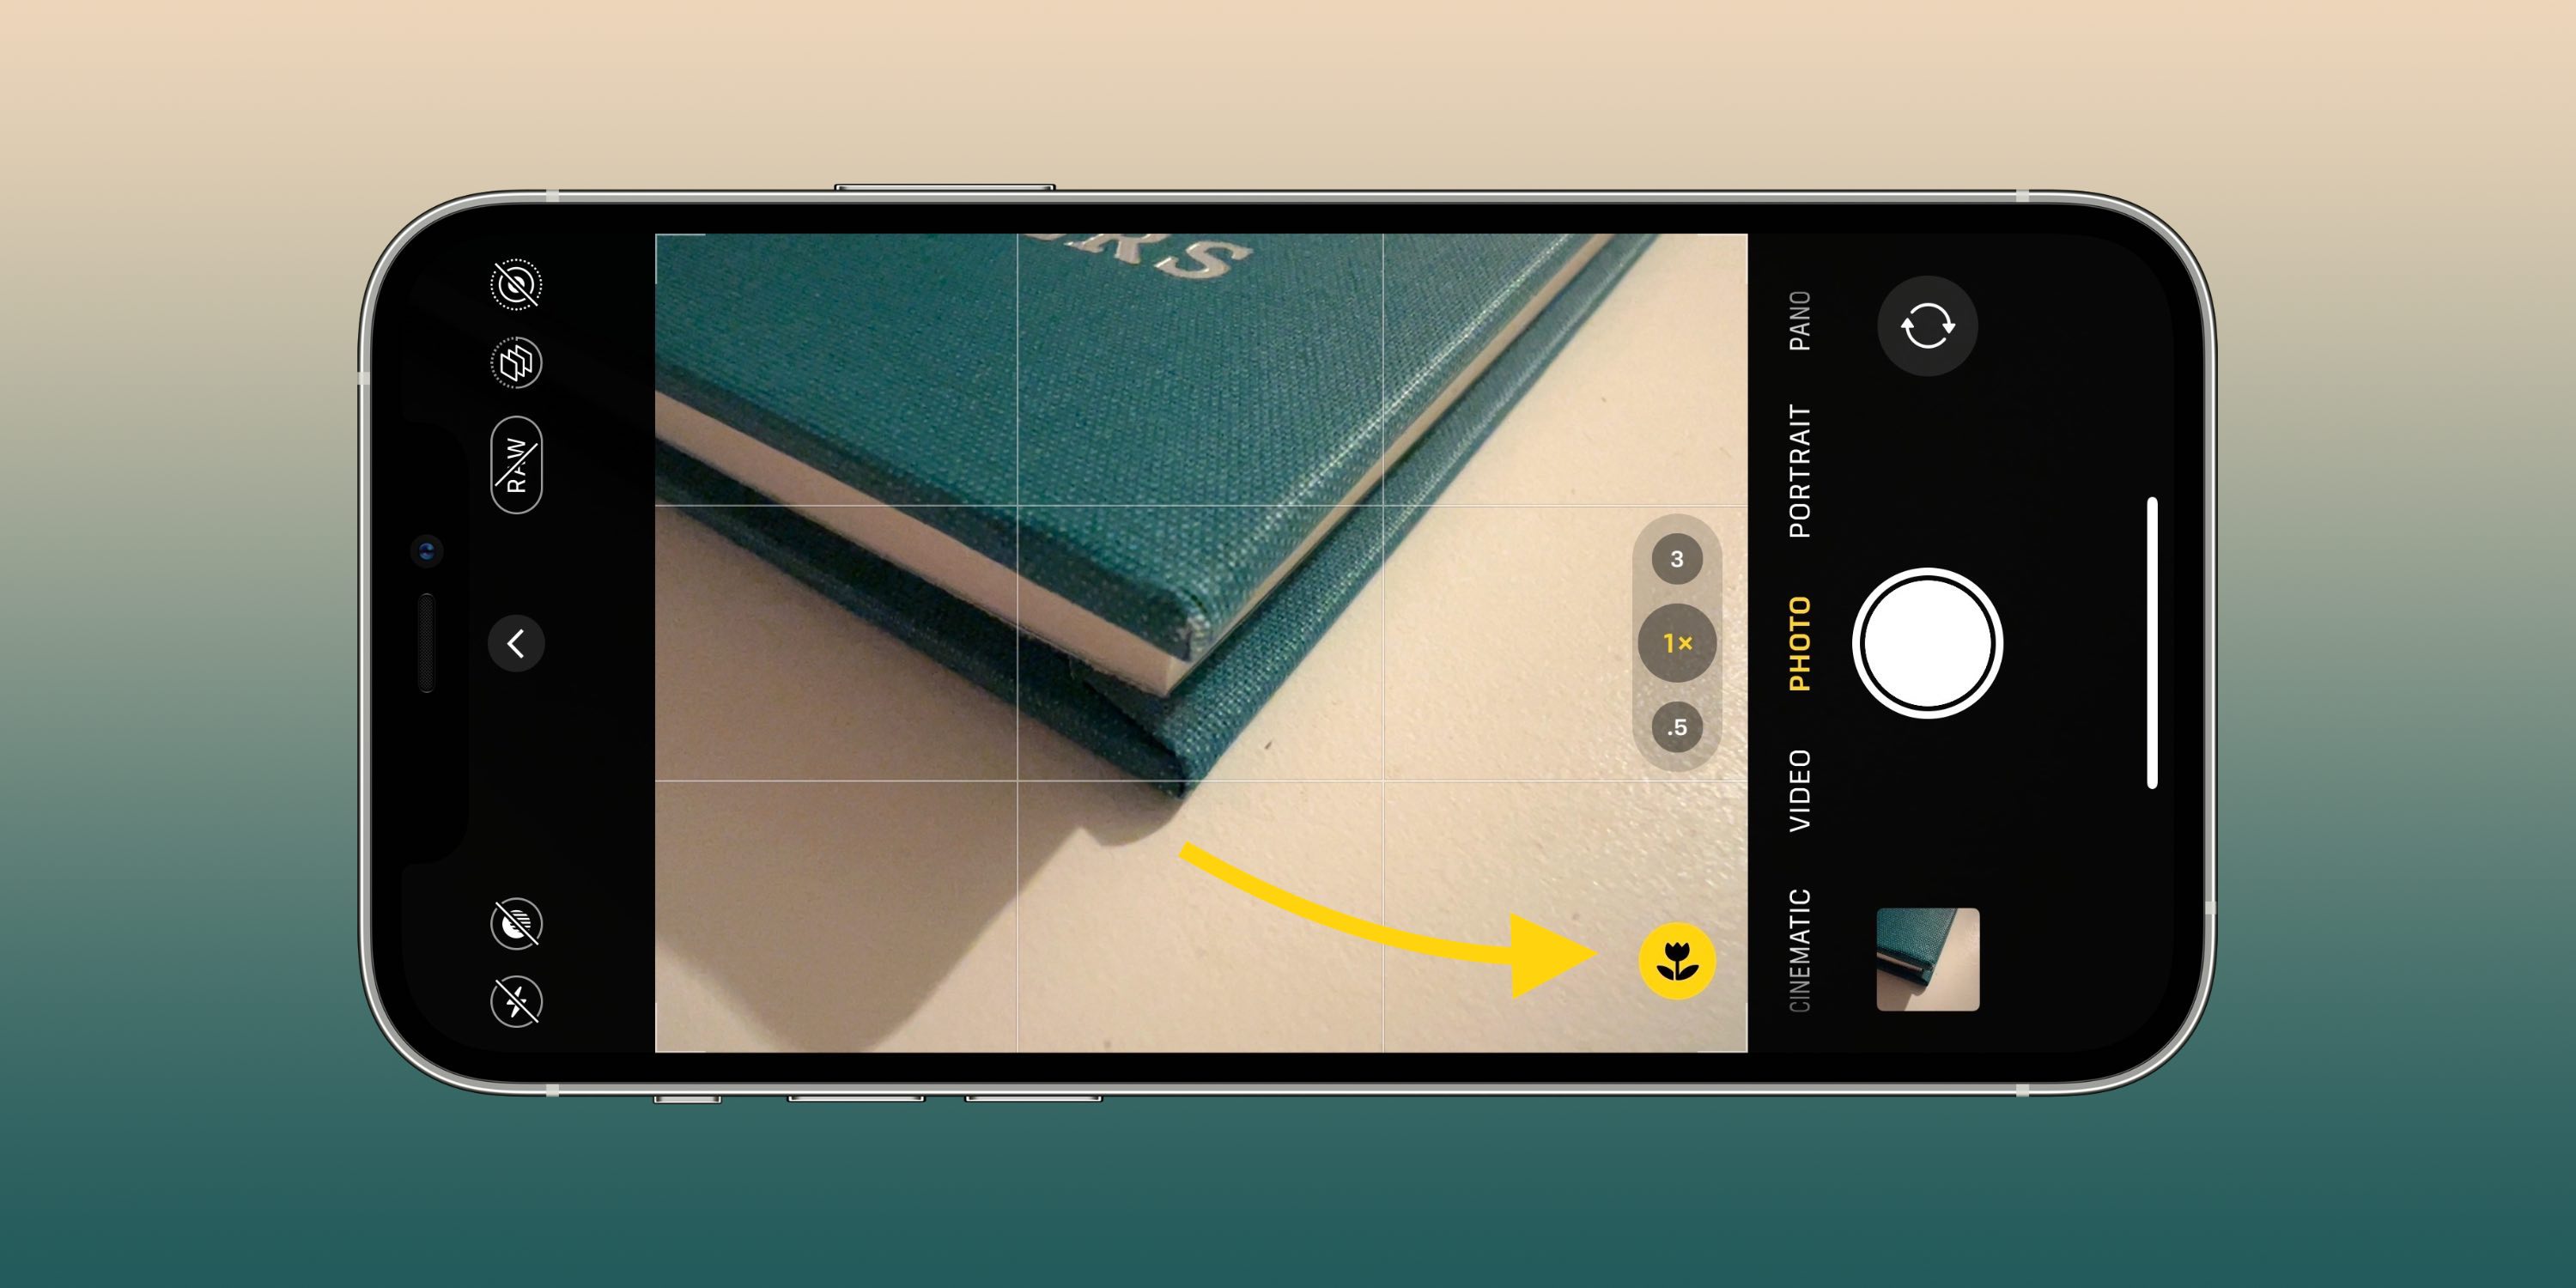 ستساعدك إعدادات الكاميرا هذه على التقاط صور ومقاطع فيديو أفضل على جهاز iPhone الخاص بك